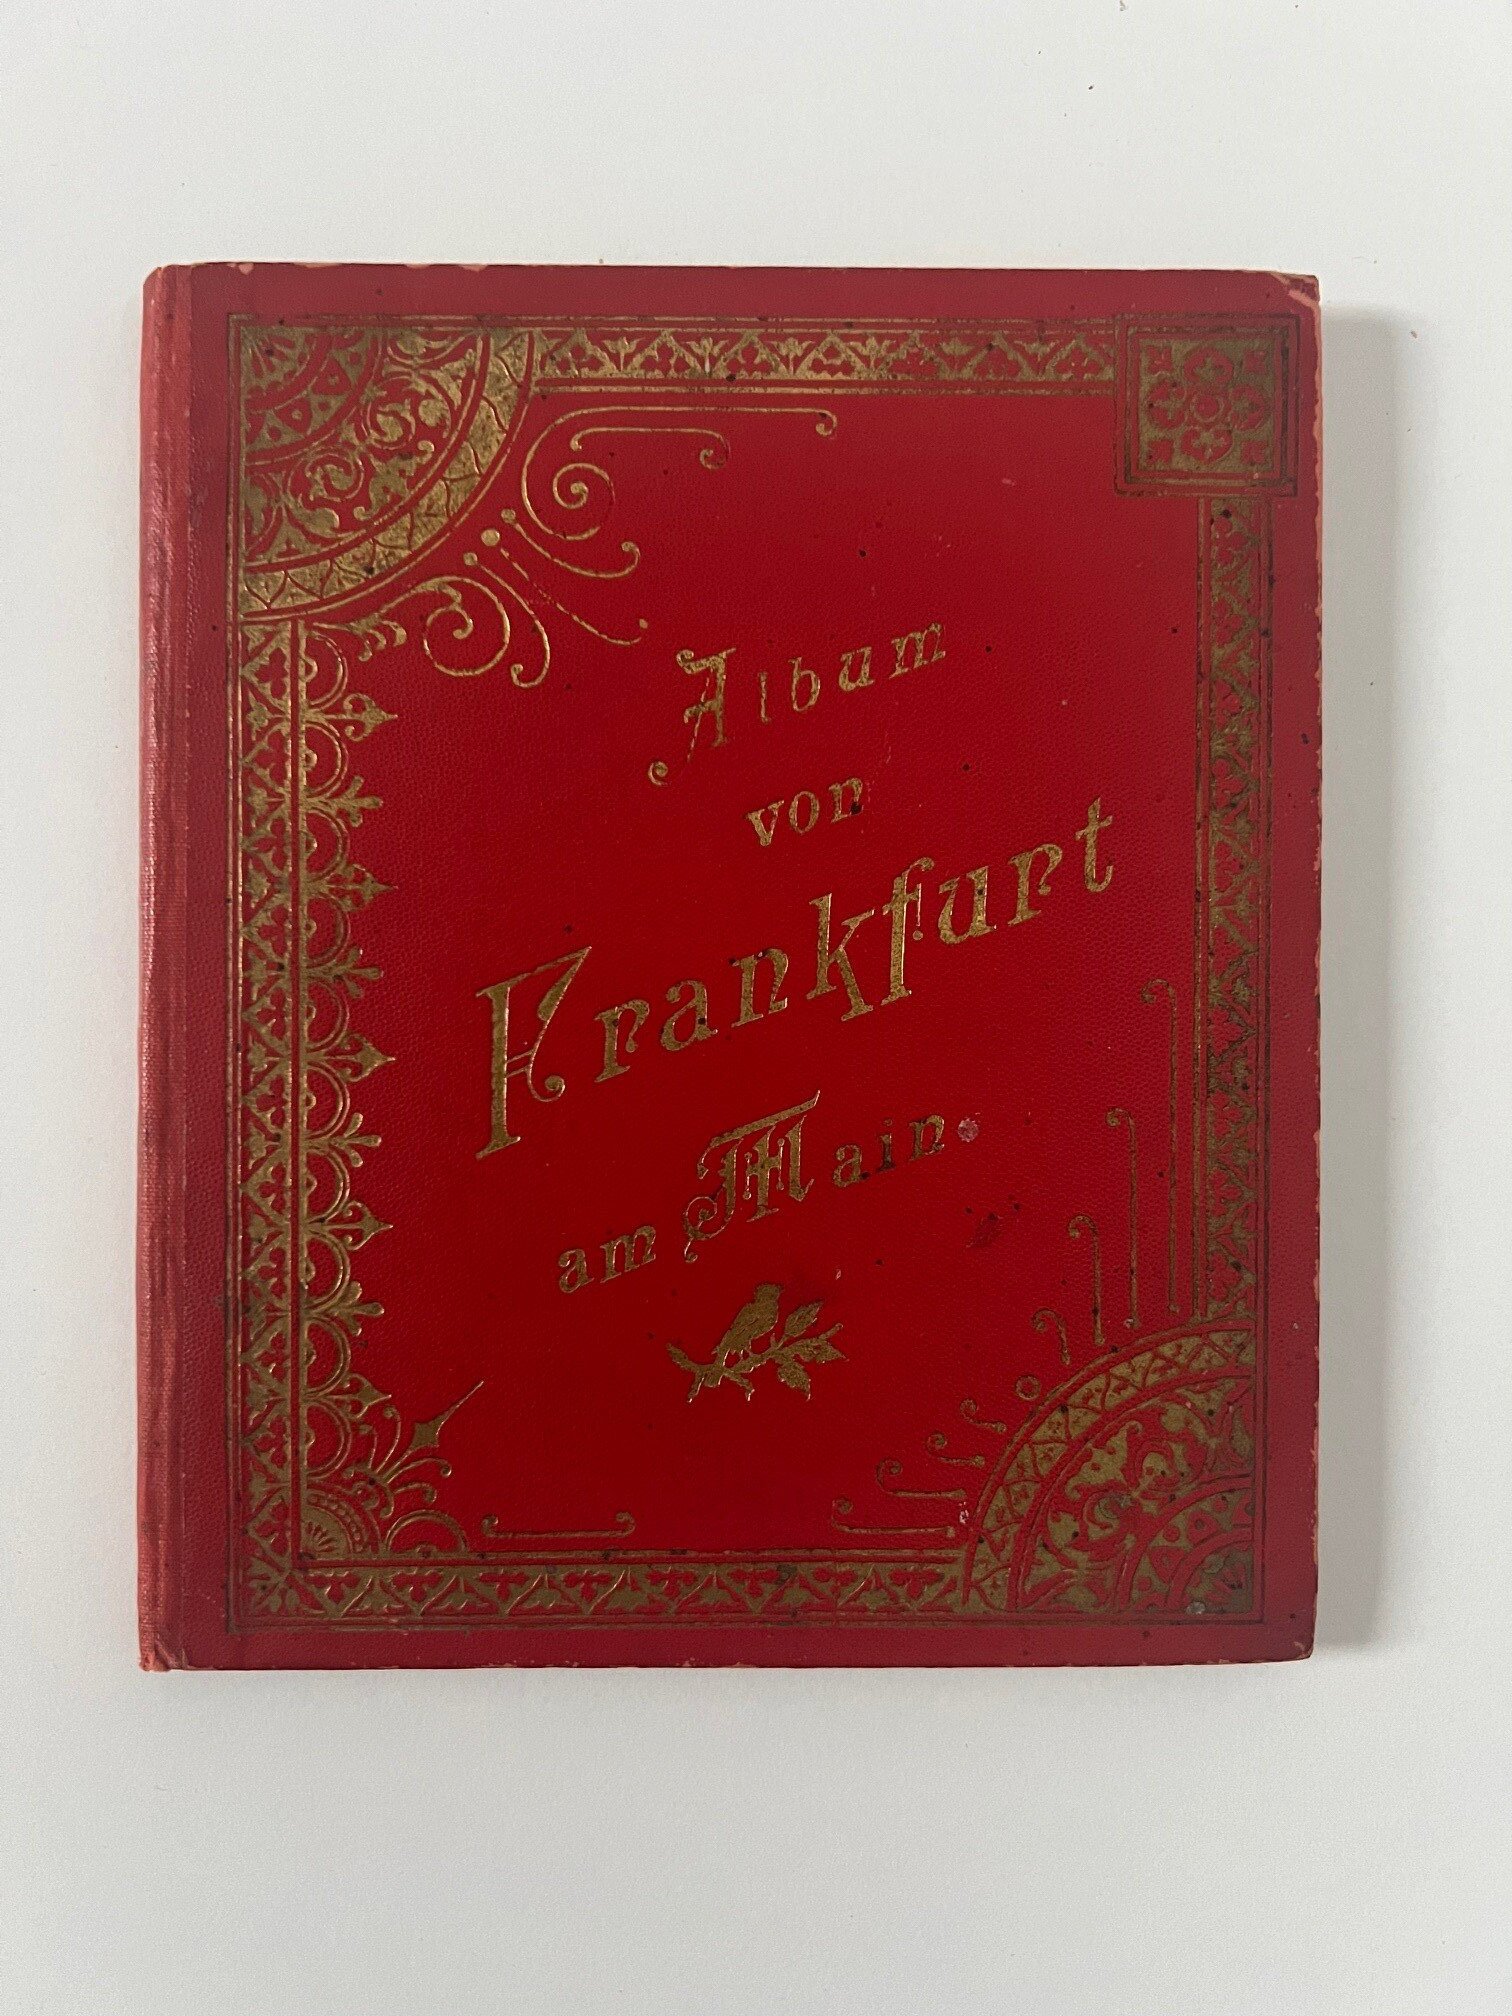 Verlag Gerhard Blümlein & Co, Album von Frankfurt am Main, 33 Lithographien als Leporello, ca. 1900. (Taunus-Rhein-Main - Regionalgeschichtliche Sammlung Dr. Stefan Naas CC BY-NC-SA)